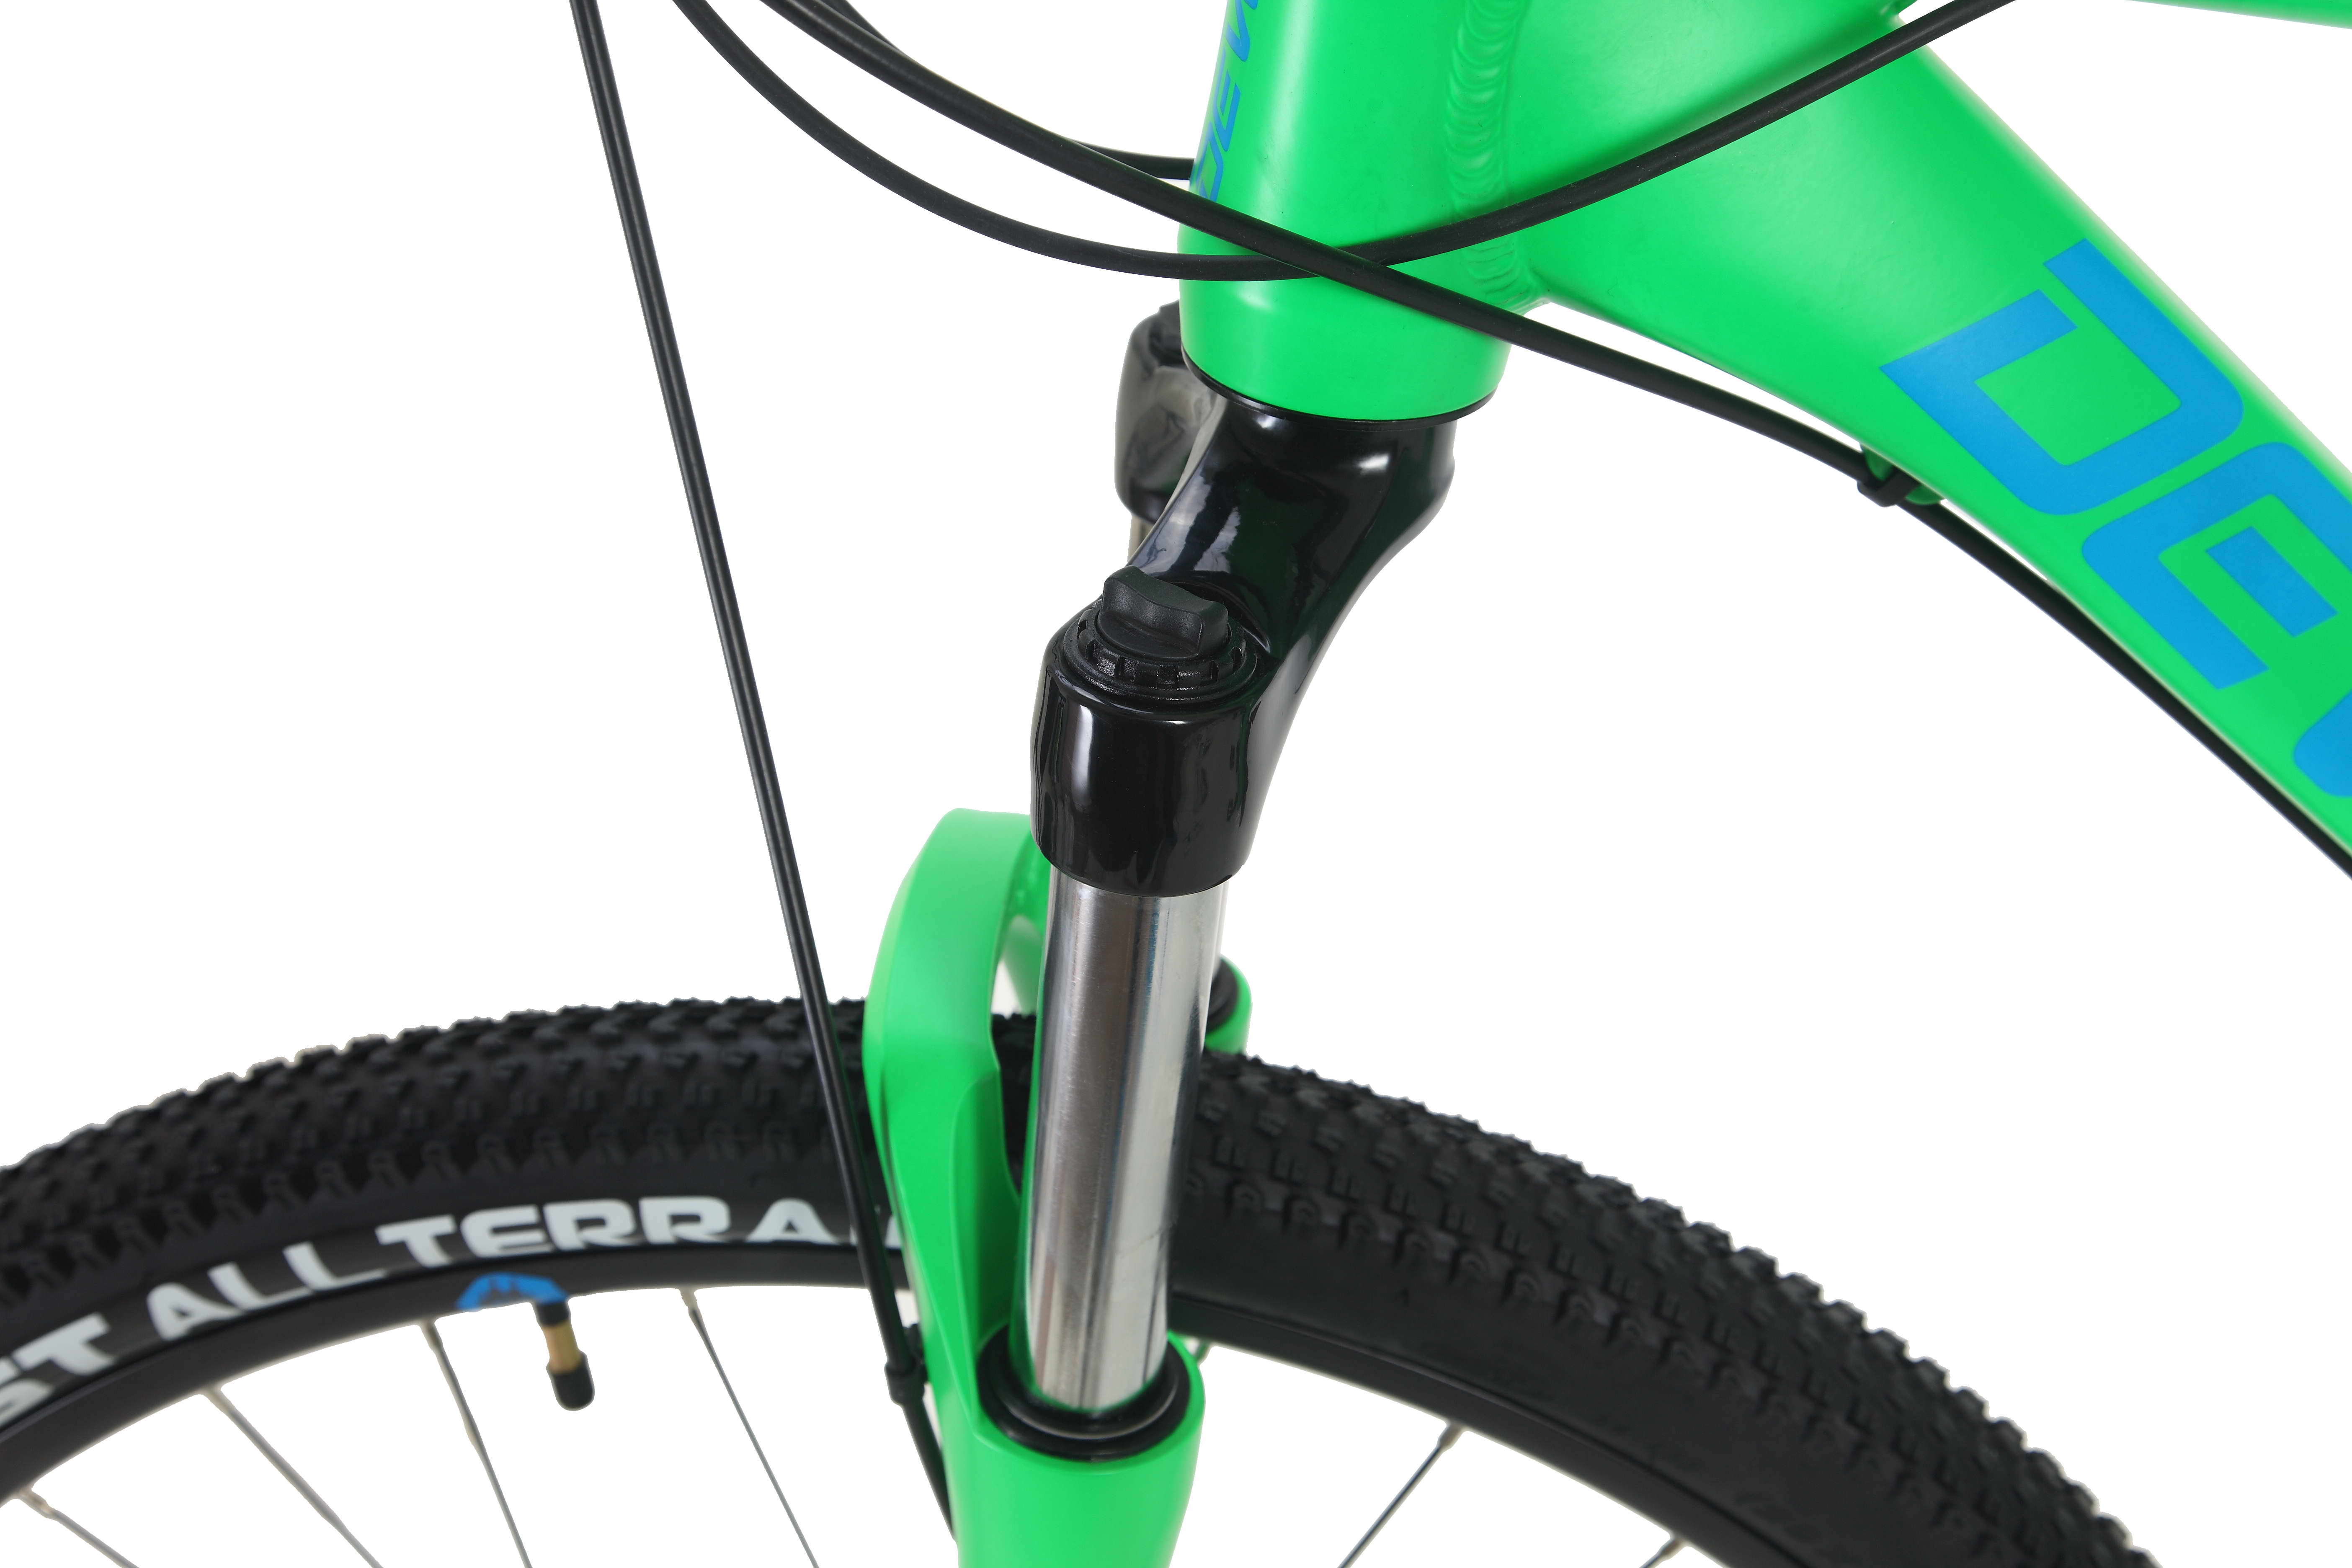 Велосипед Dewolf GROW 40, размер неоновый ярко-зеленый